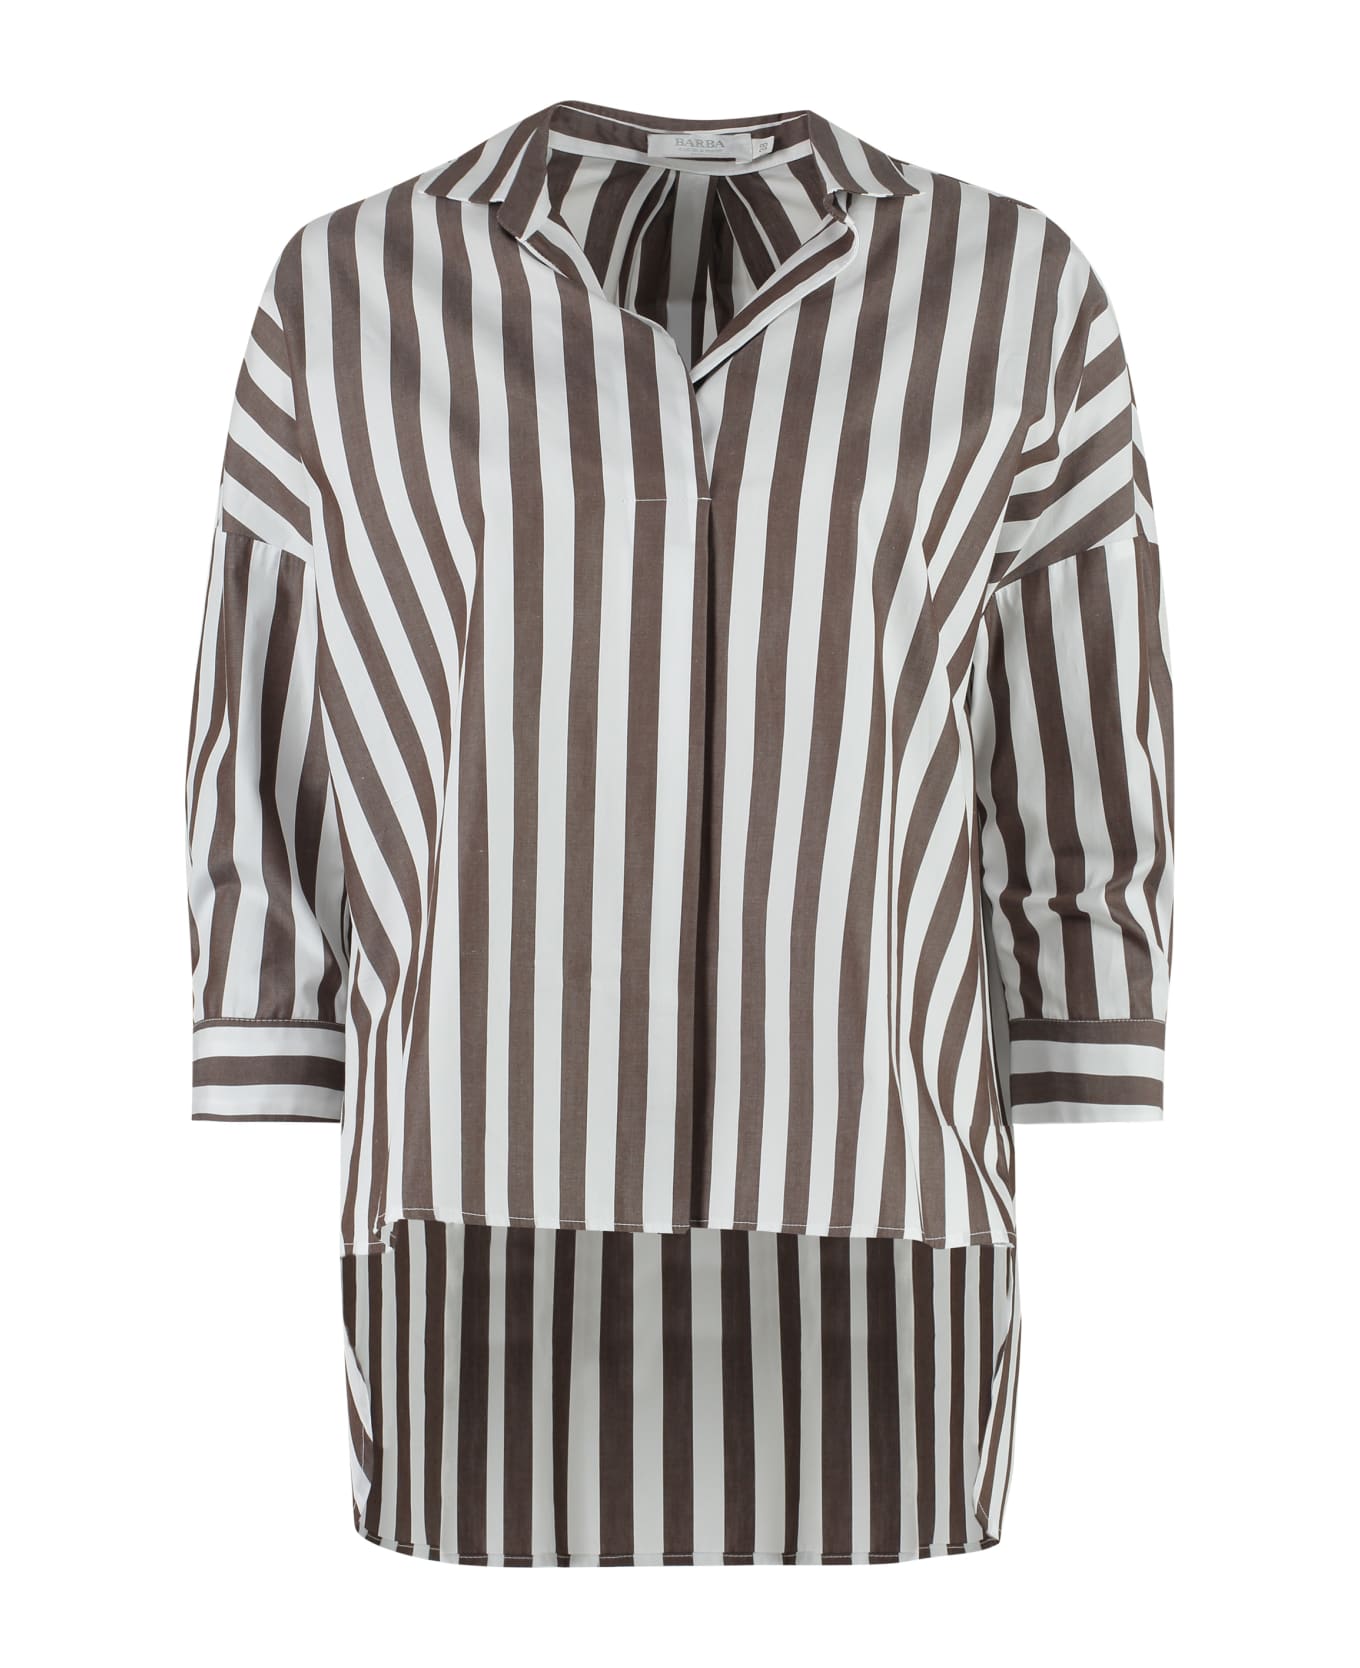 Barba Napoli Striped Cotton Shirt - Multicolor シャツ